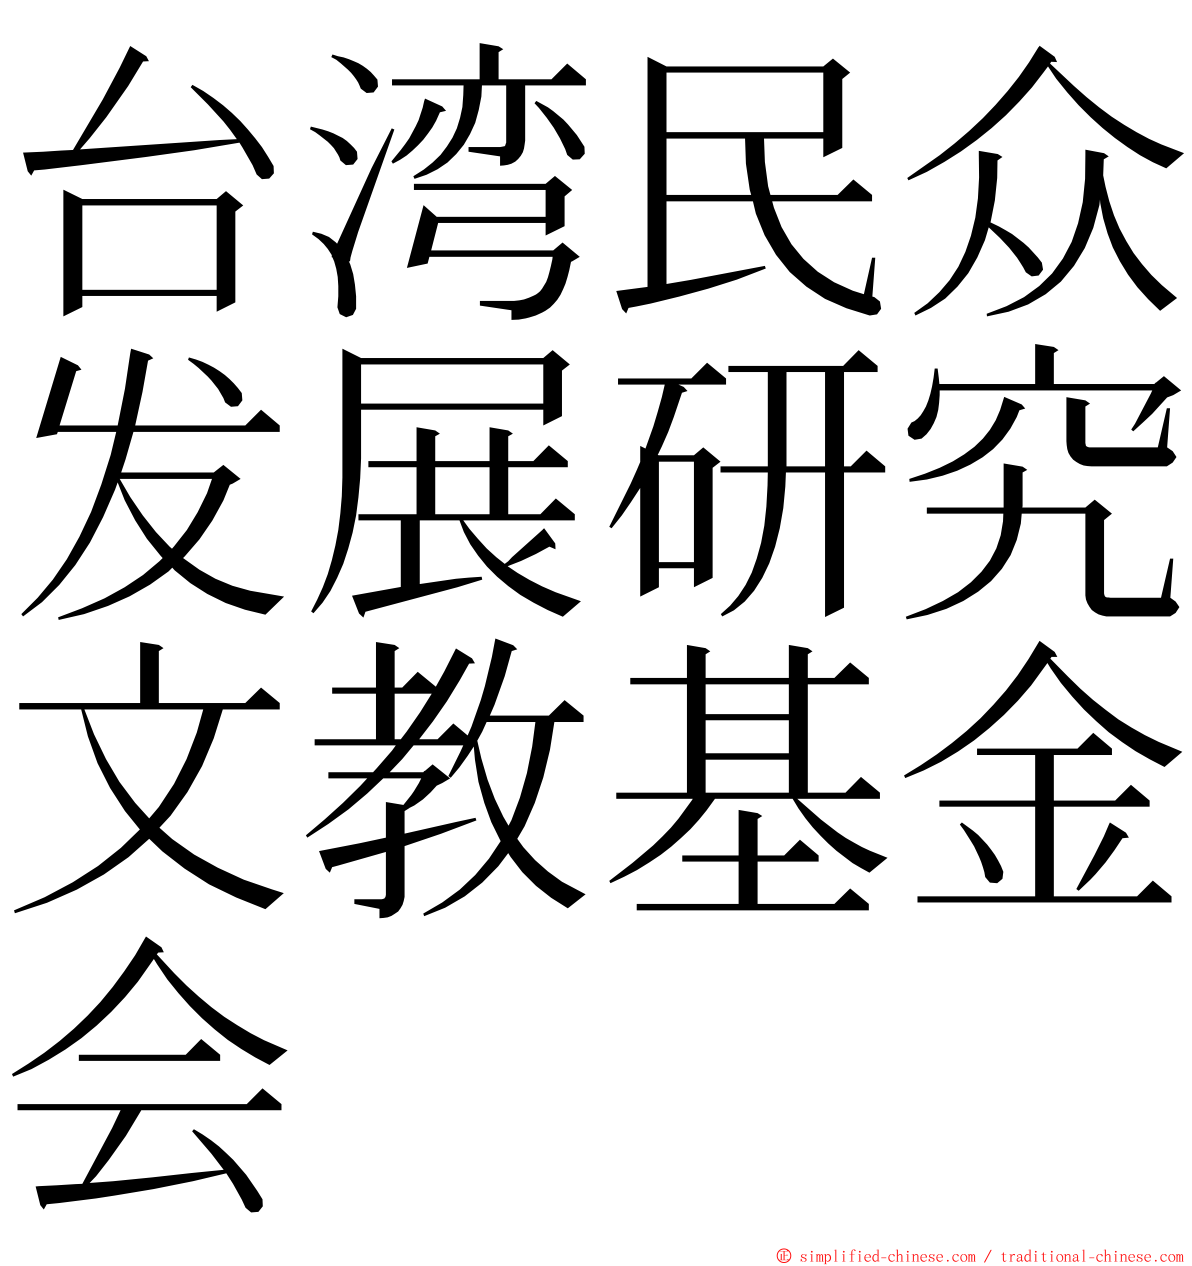 台湾民众发展研究文教基金会 ming font